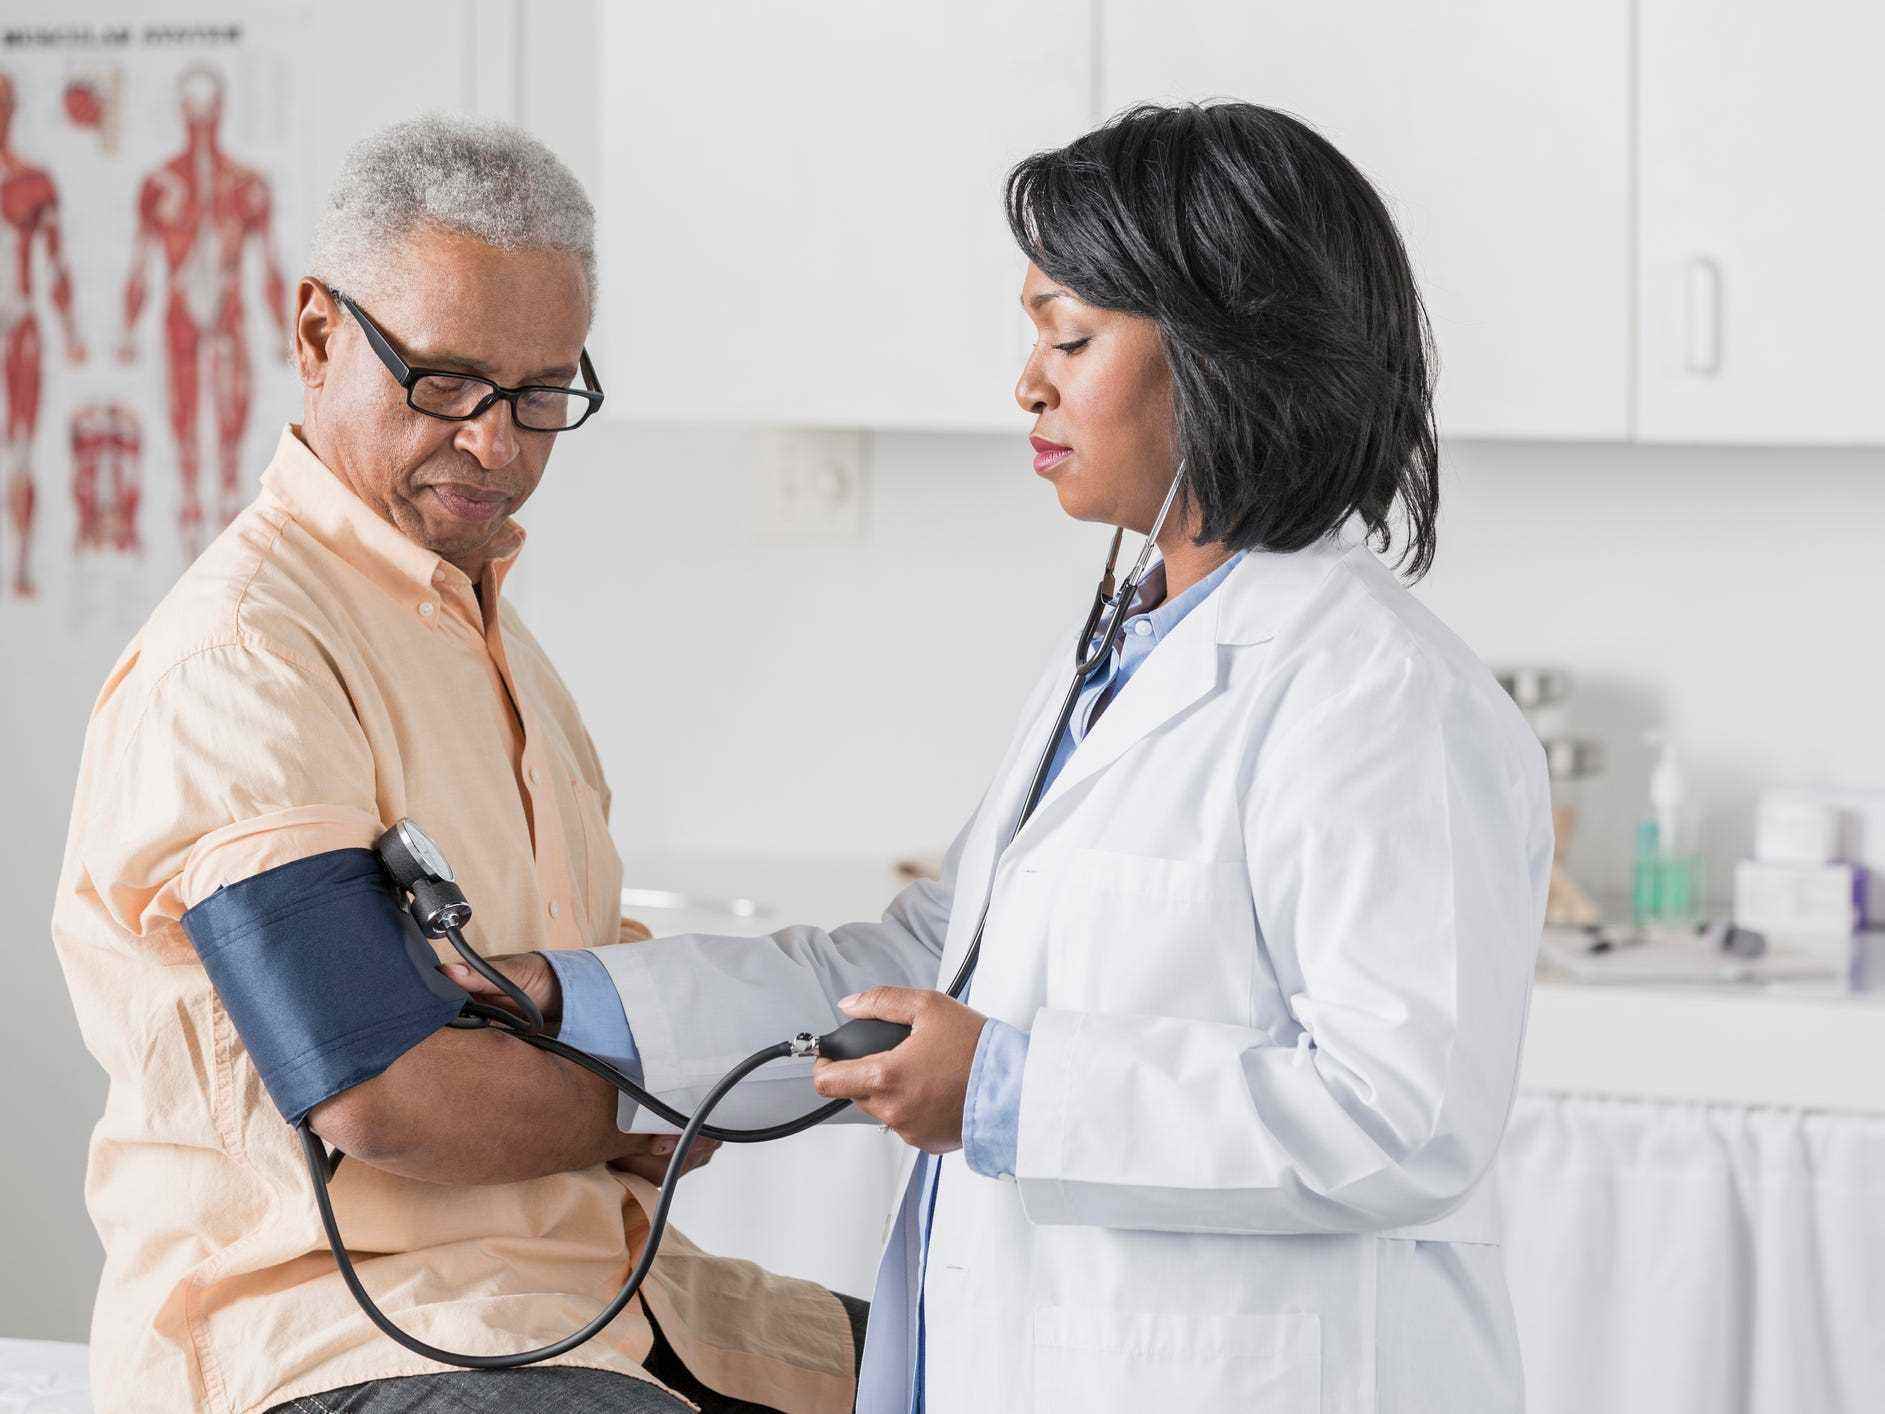 Ein Arzt im weißen Laborkittel führt in einer Arztpraxis einen Blutdrucktest bei einem älteren Patienten mit kurzen grauen Haaren durch